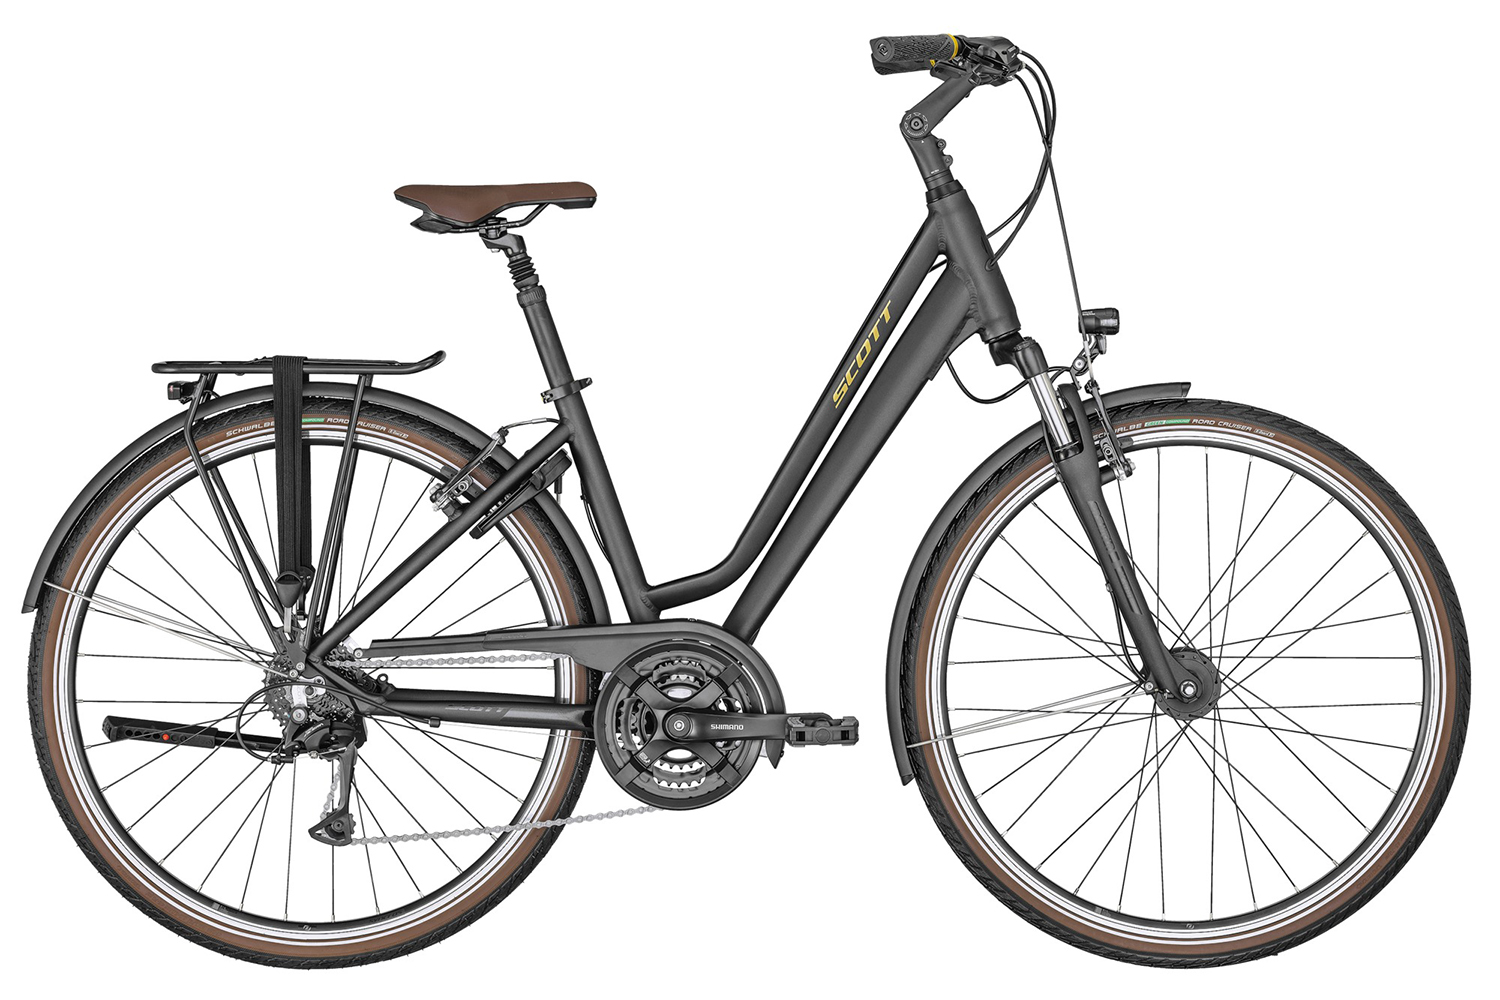  Отзывы о Женском велосипеде Scott Sub Comfort 10 Unisex 2020